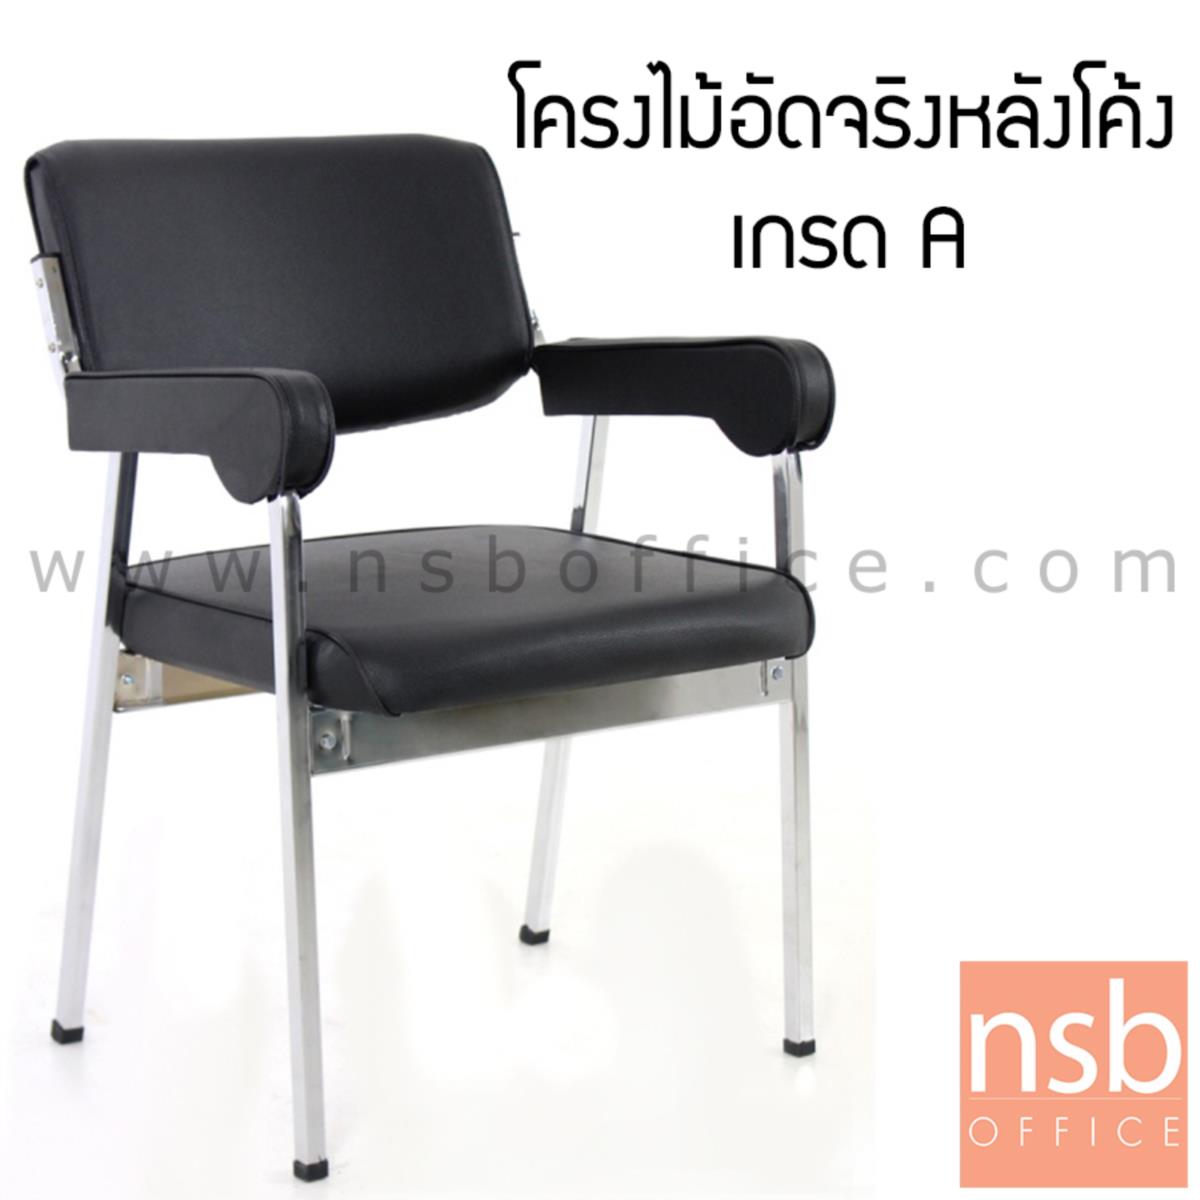 B05A005:เก้าอี้อเนกประสงค์ รุ่น CM-015 ขาเหล็ก 